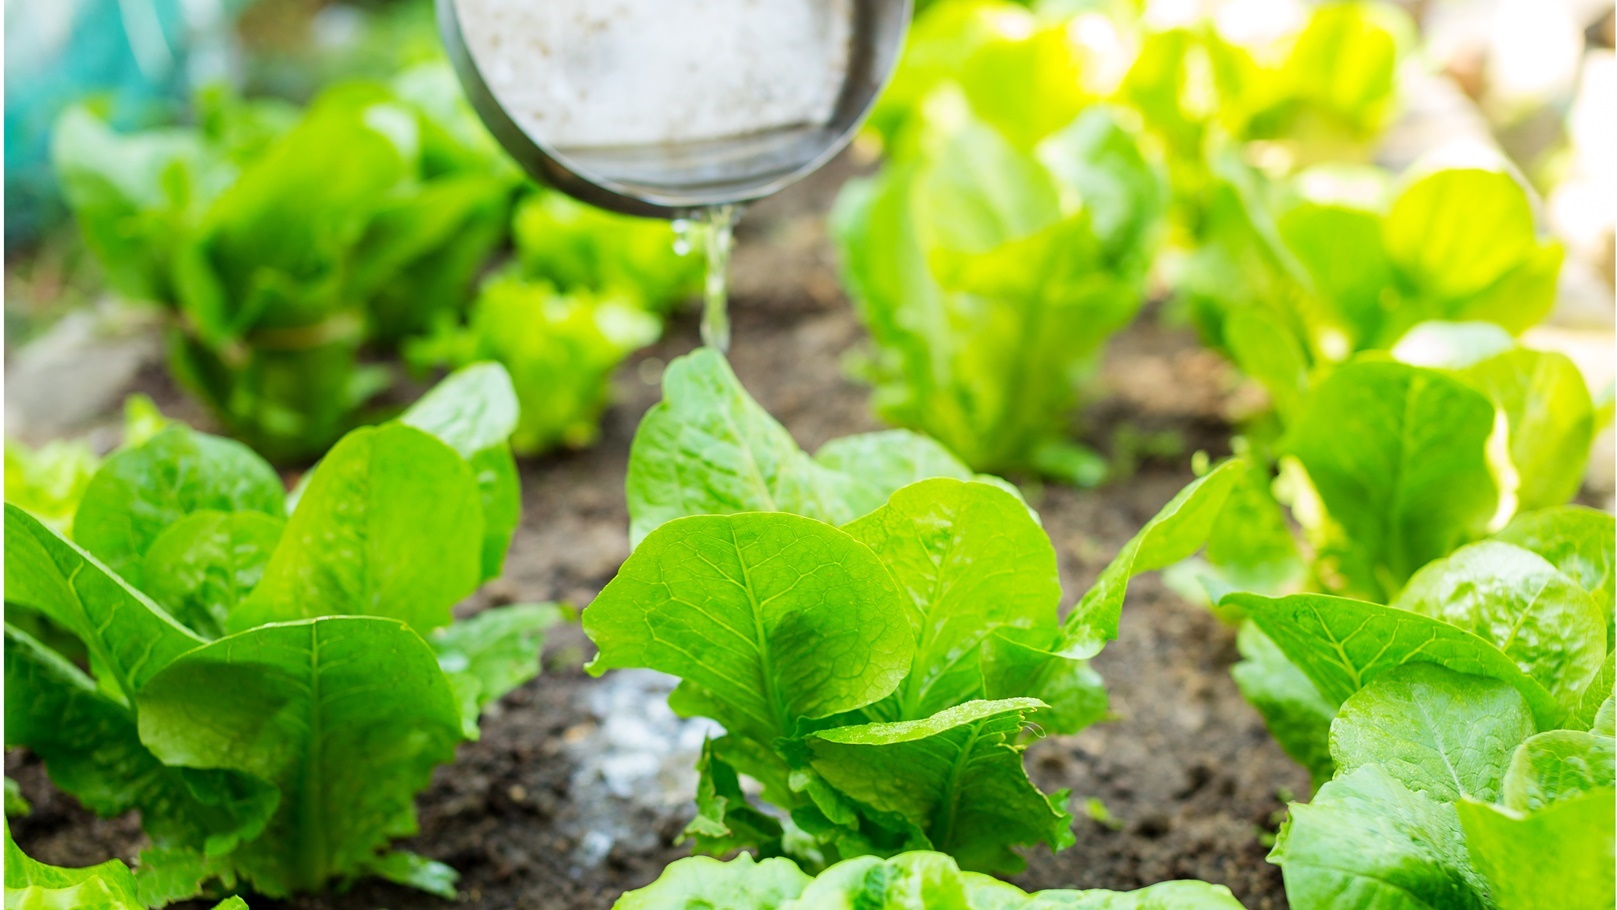 fertilizer-of-lettuce-field-2021-08-29-05-52-30-utc